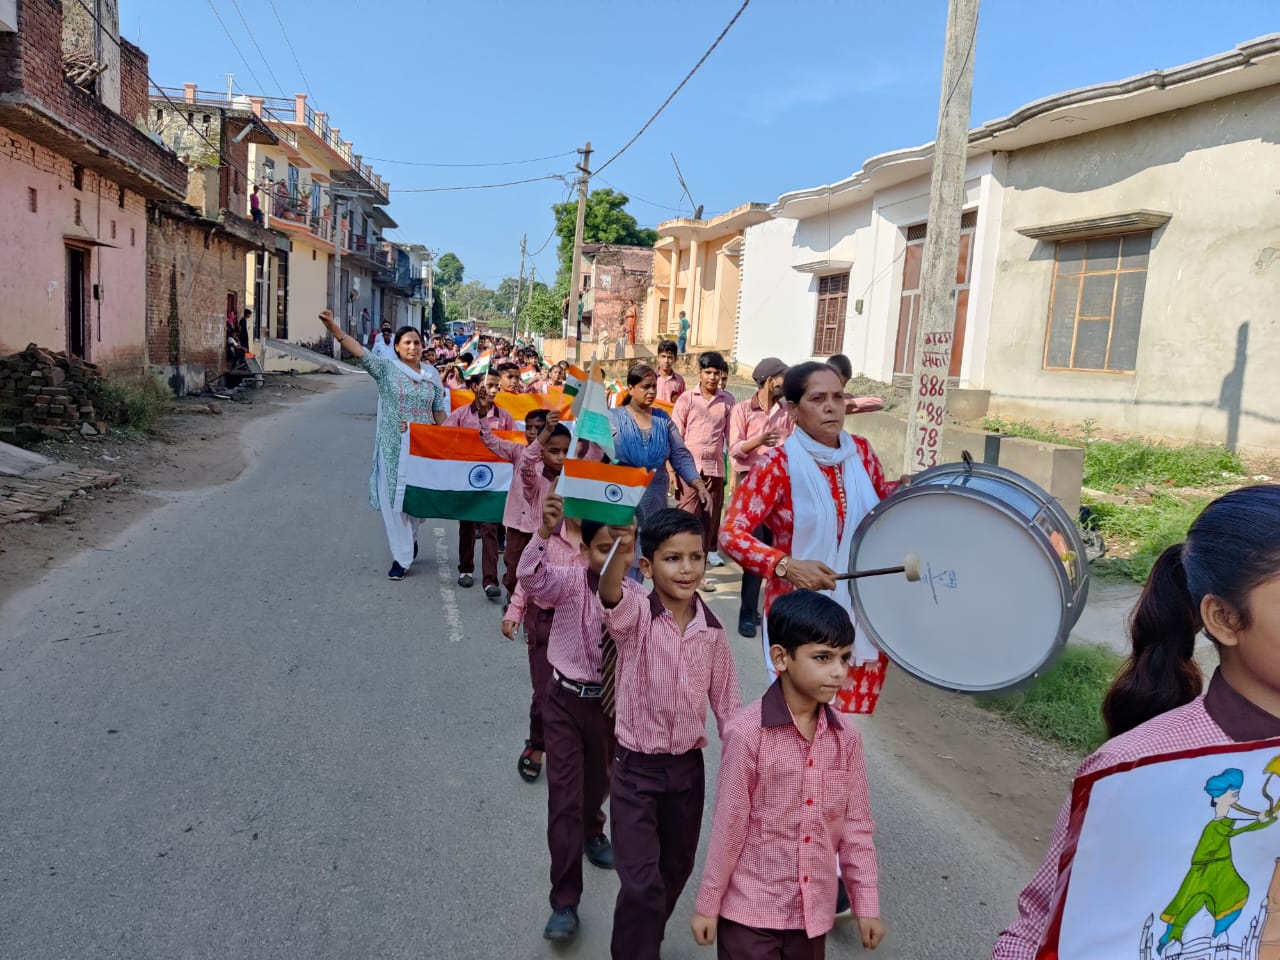 आज दिनांक 08/08 /2022 को उच्च प्राथमिक विद्यालय सढौली हरिया ब्लाक रामपुर मनिहारान जनपद सहारनपुर में आजादी का अमृत महोत्सव मनाया गया।